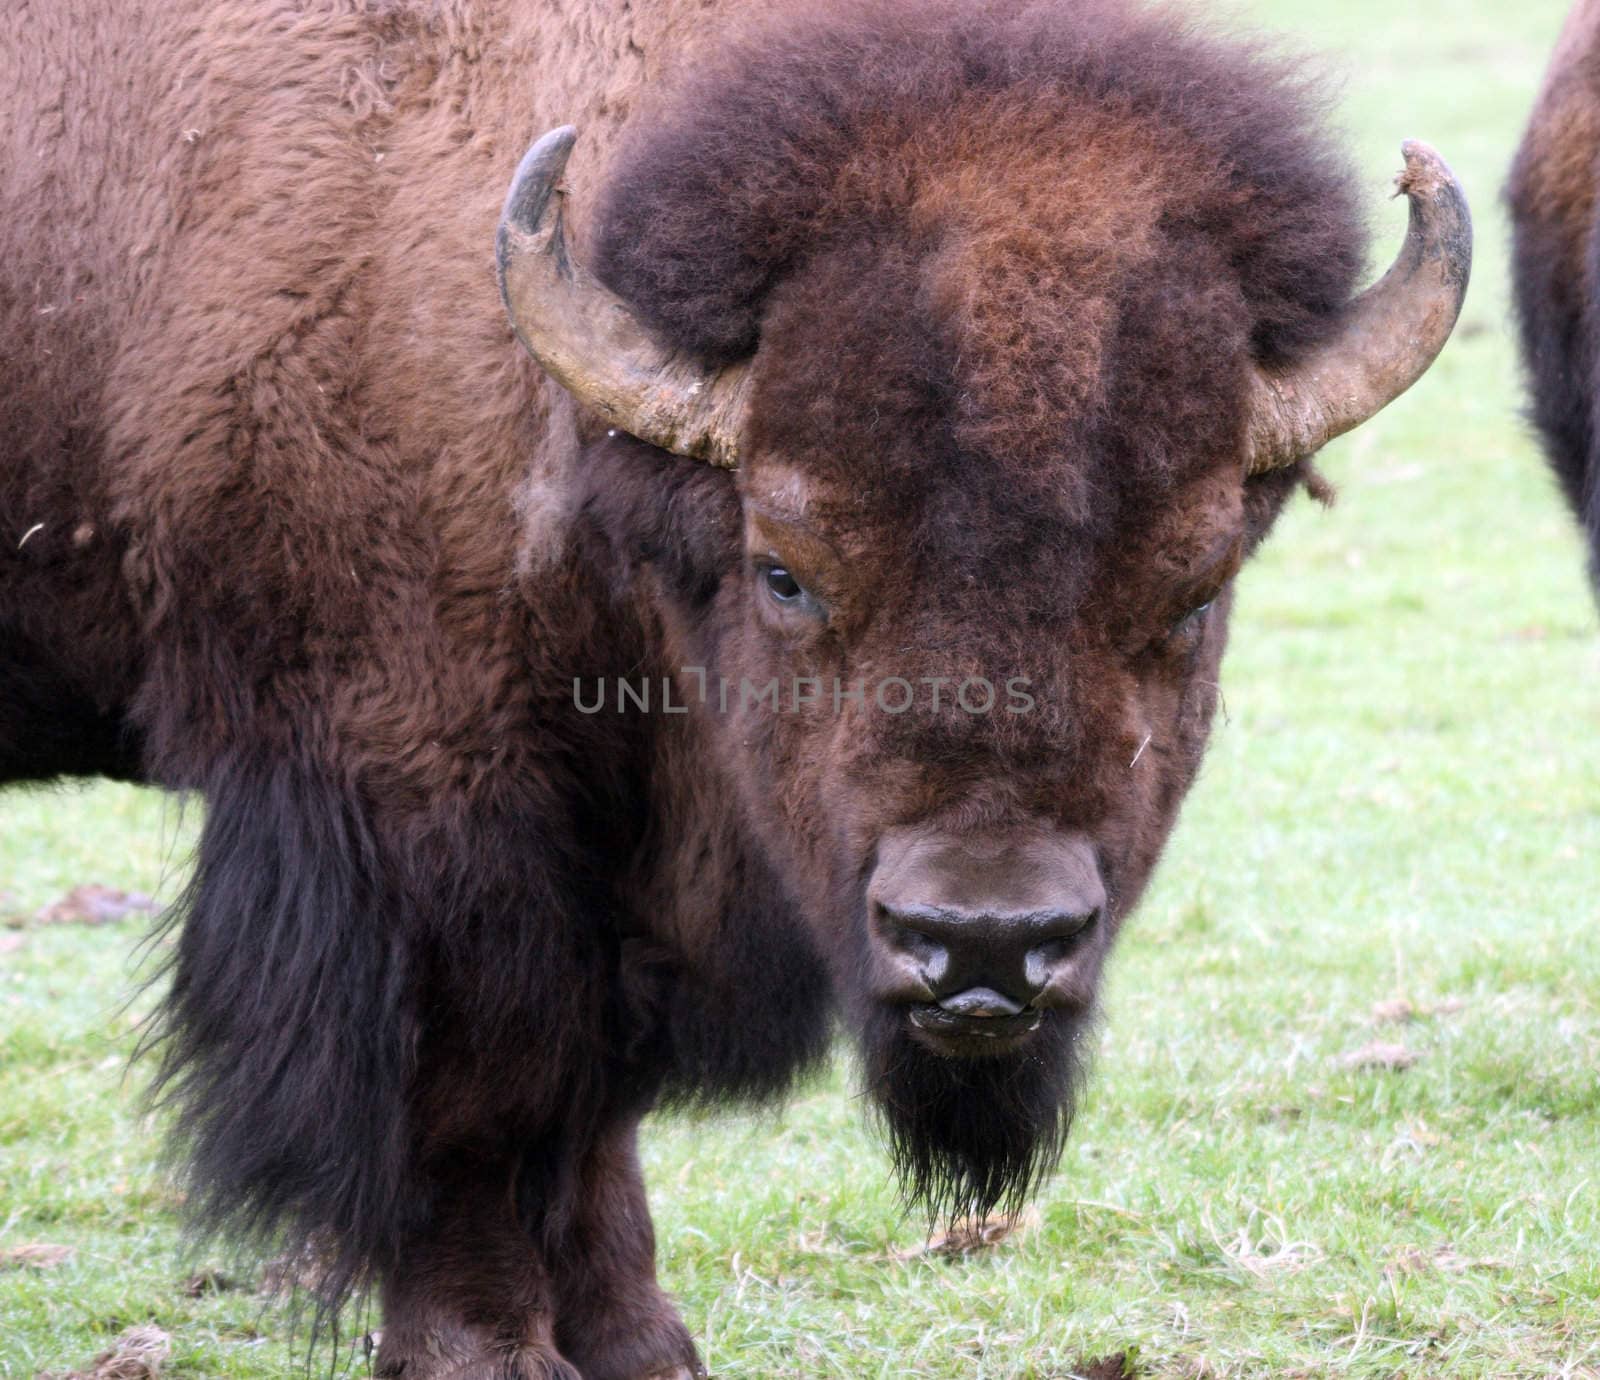 American Bison/Buffalo.  Photo taken at Northwest Trek Wildlife Park, WA.